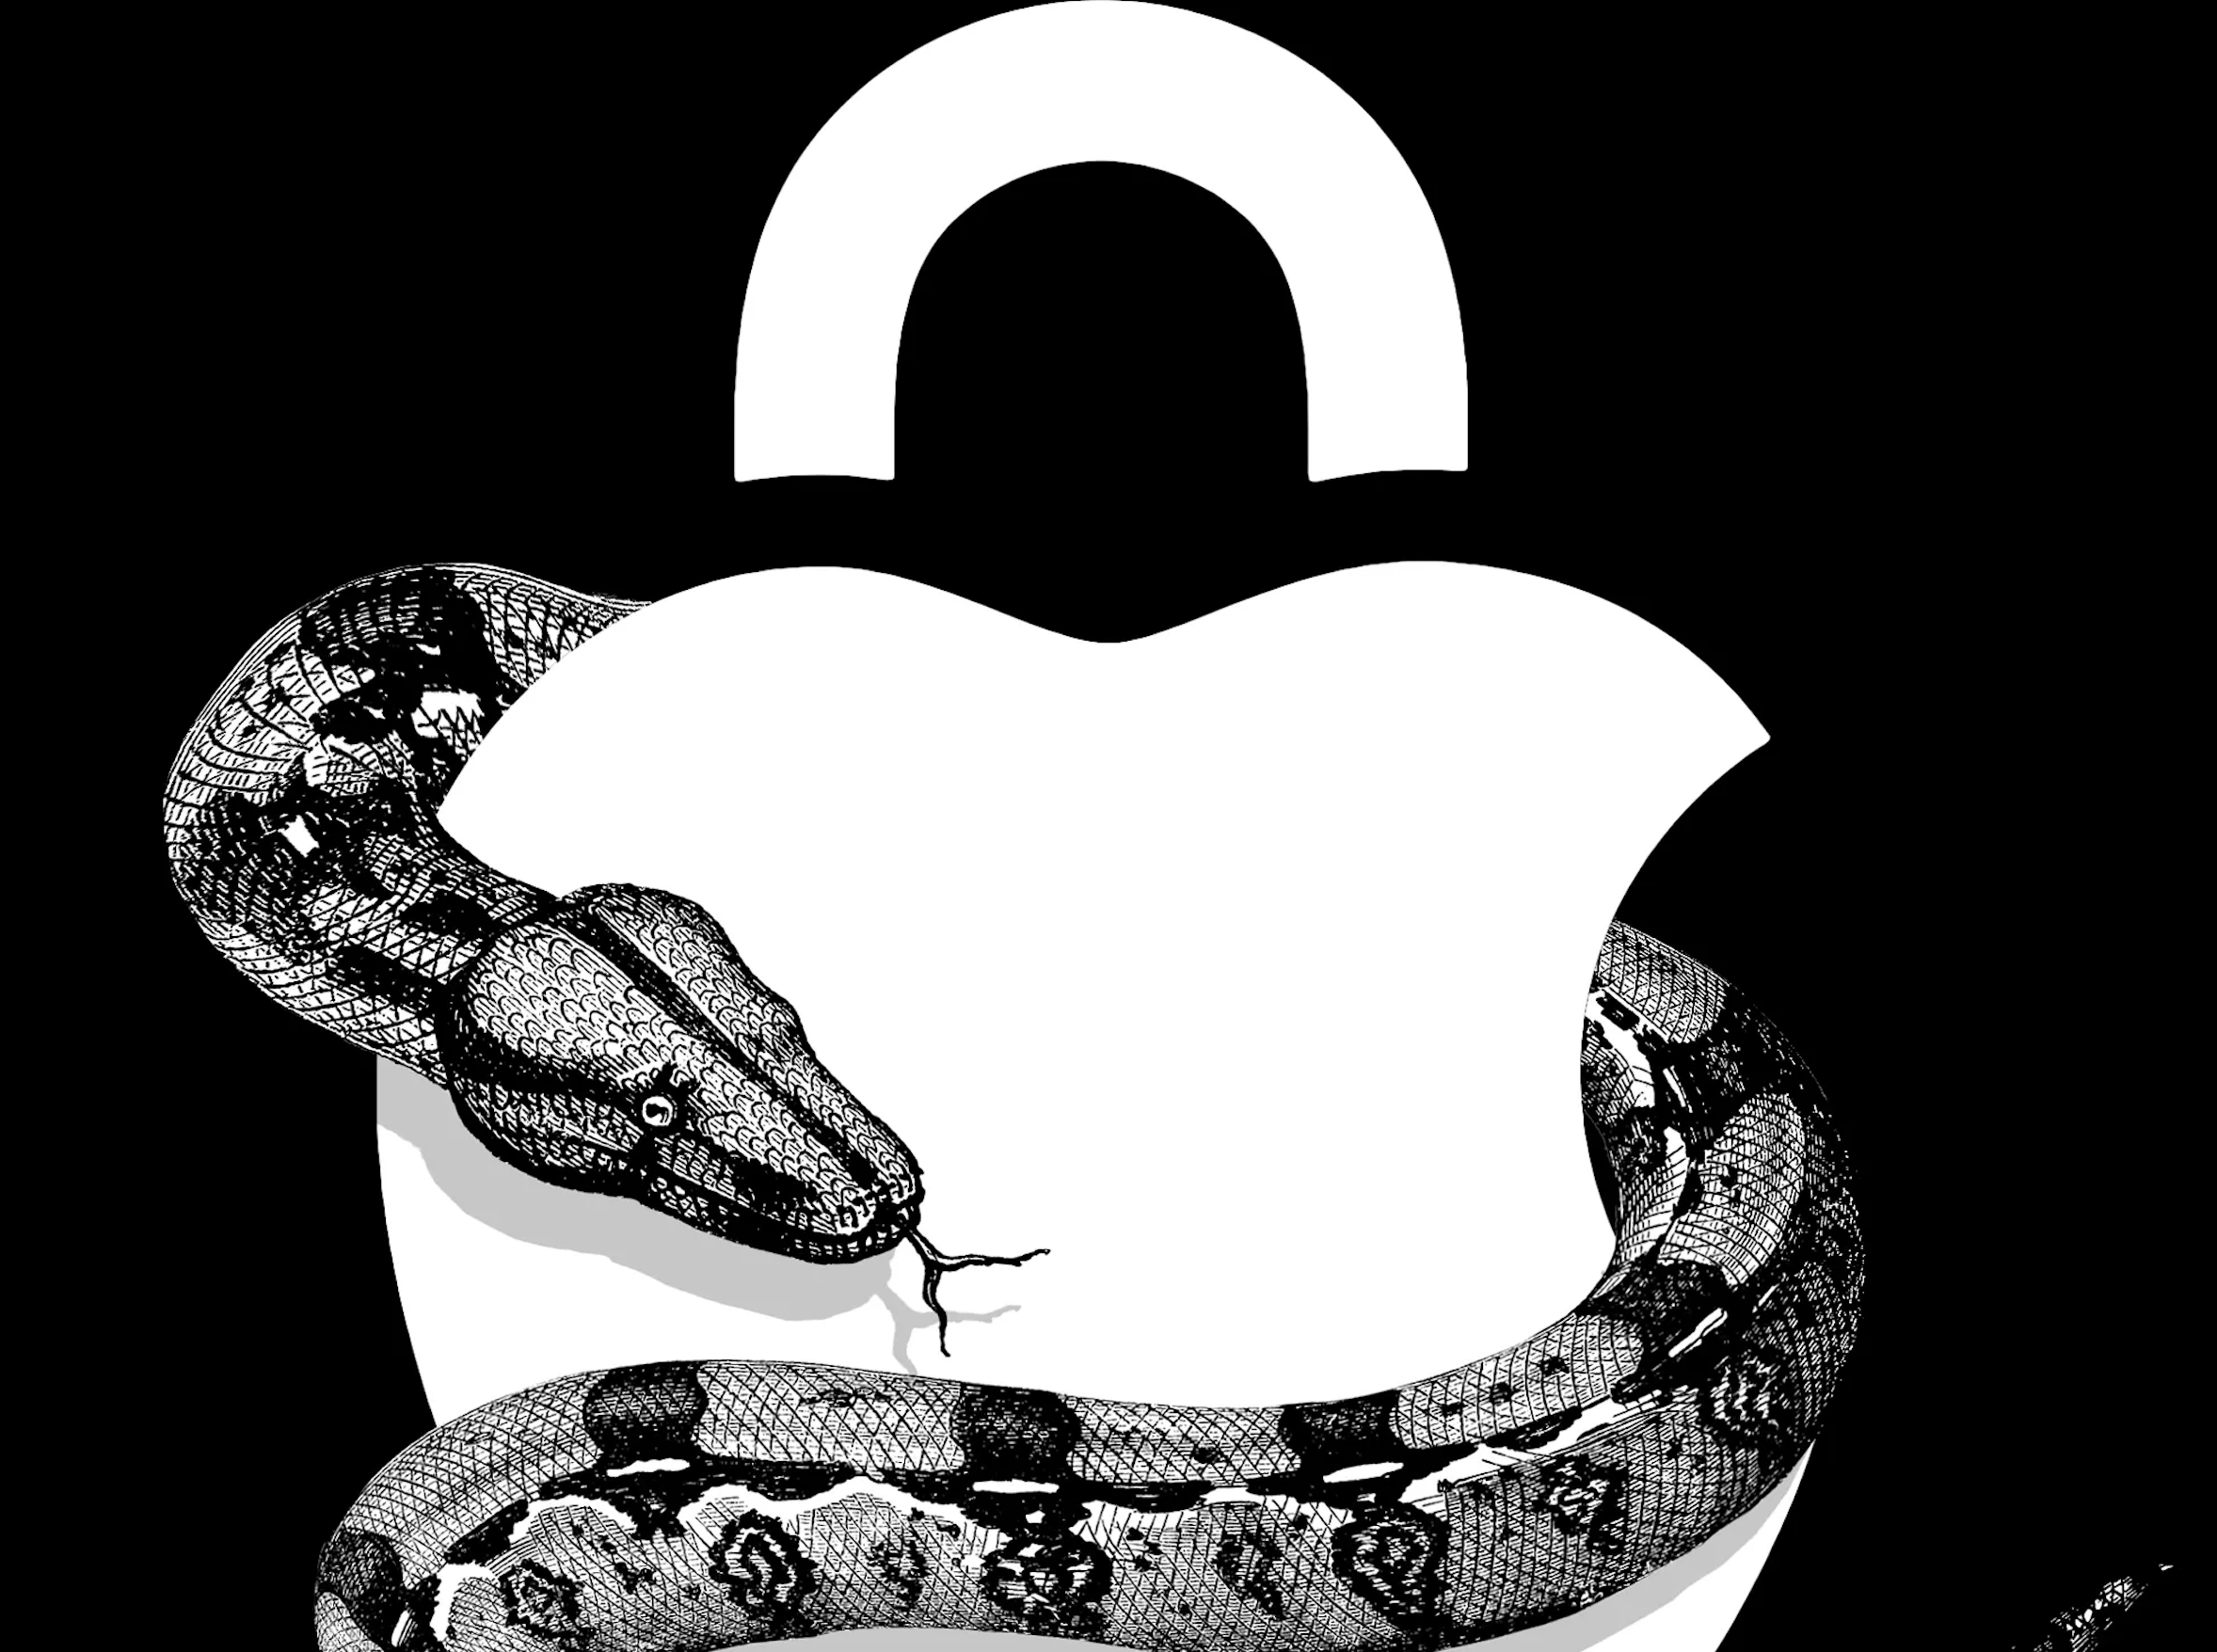 Una mirada dentro de la imposible guerra de Apple contra el abuso y la explotación infantil